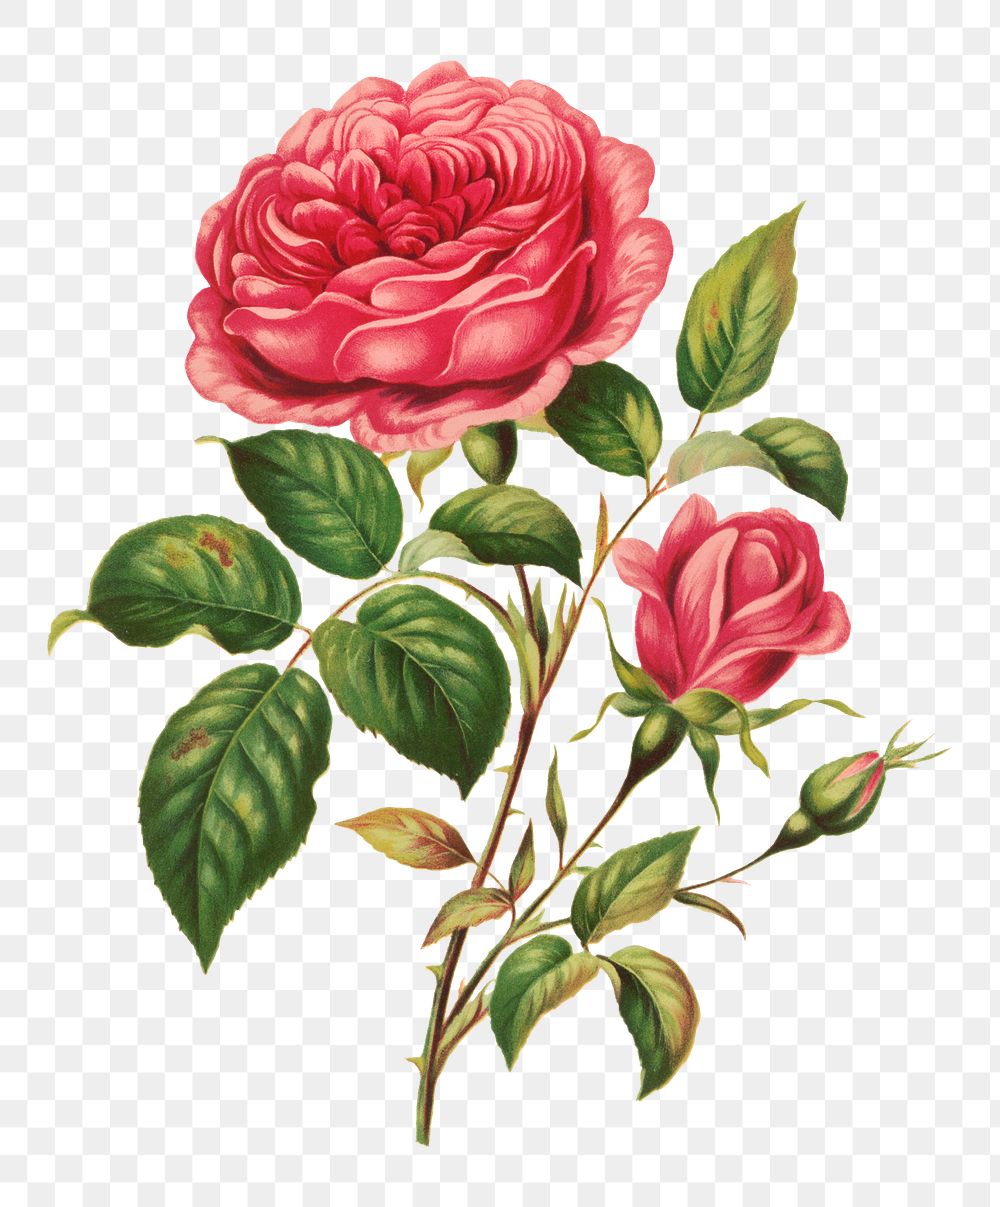 Vintage rose flower botanical png illustration, remix from artworks by L. Prang & Co.